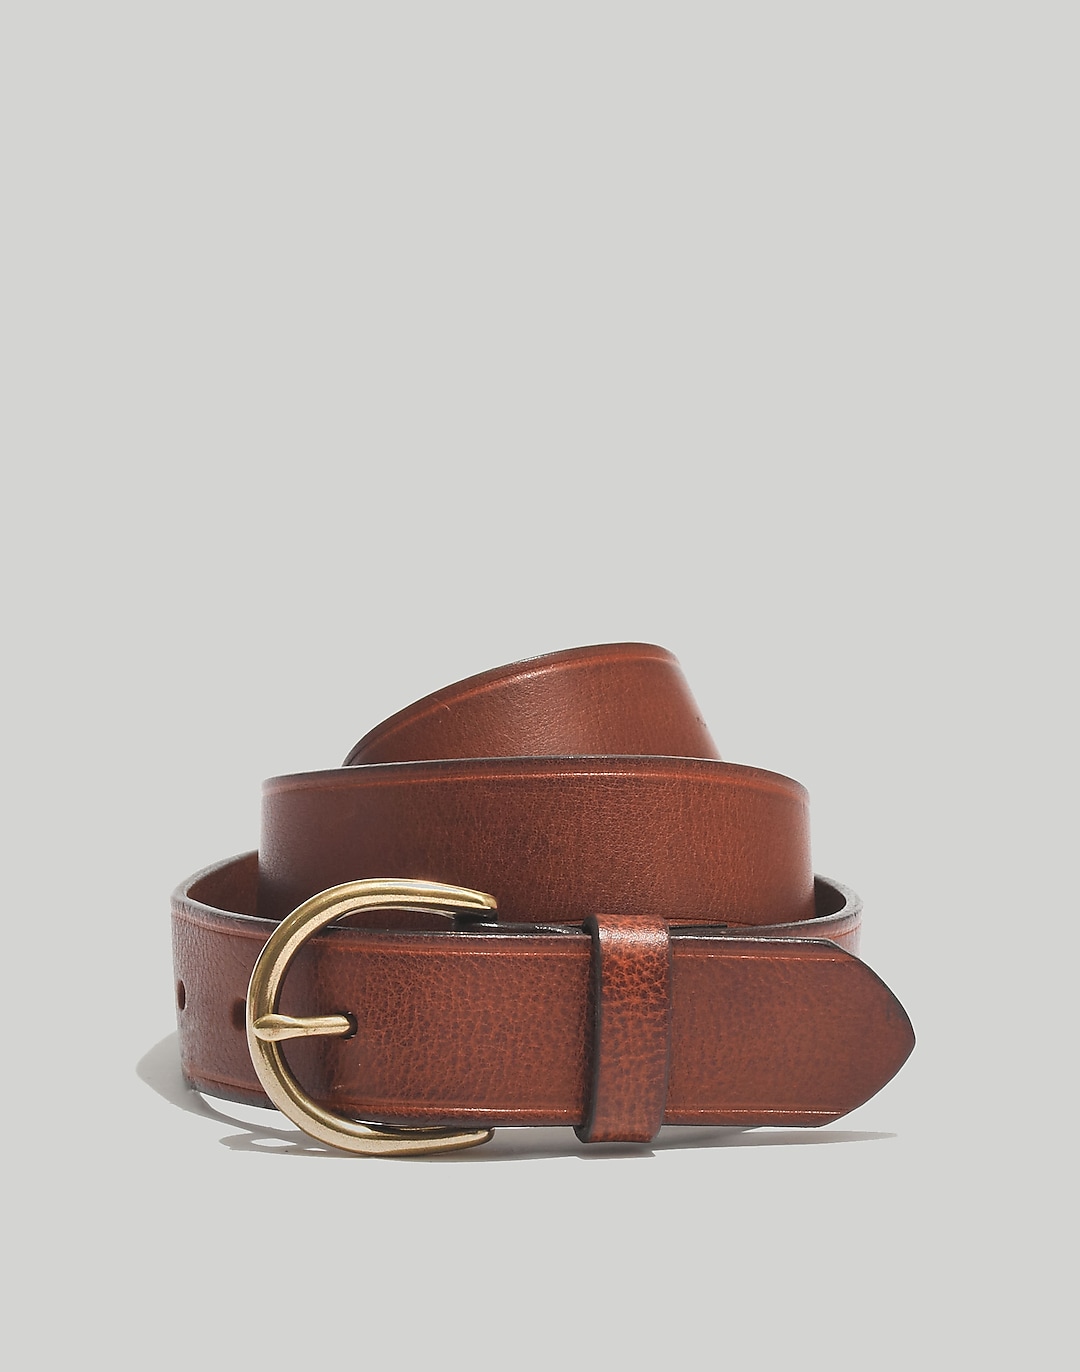 Madewell Medium Perfect Leather Belt | Madewell